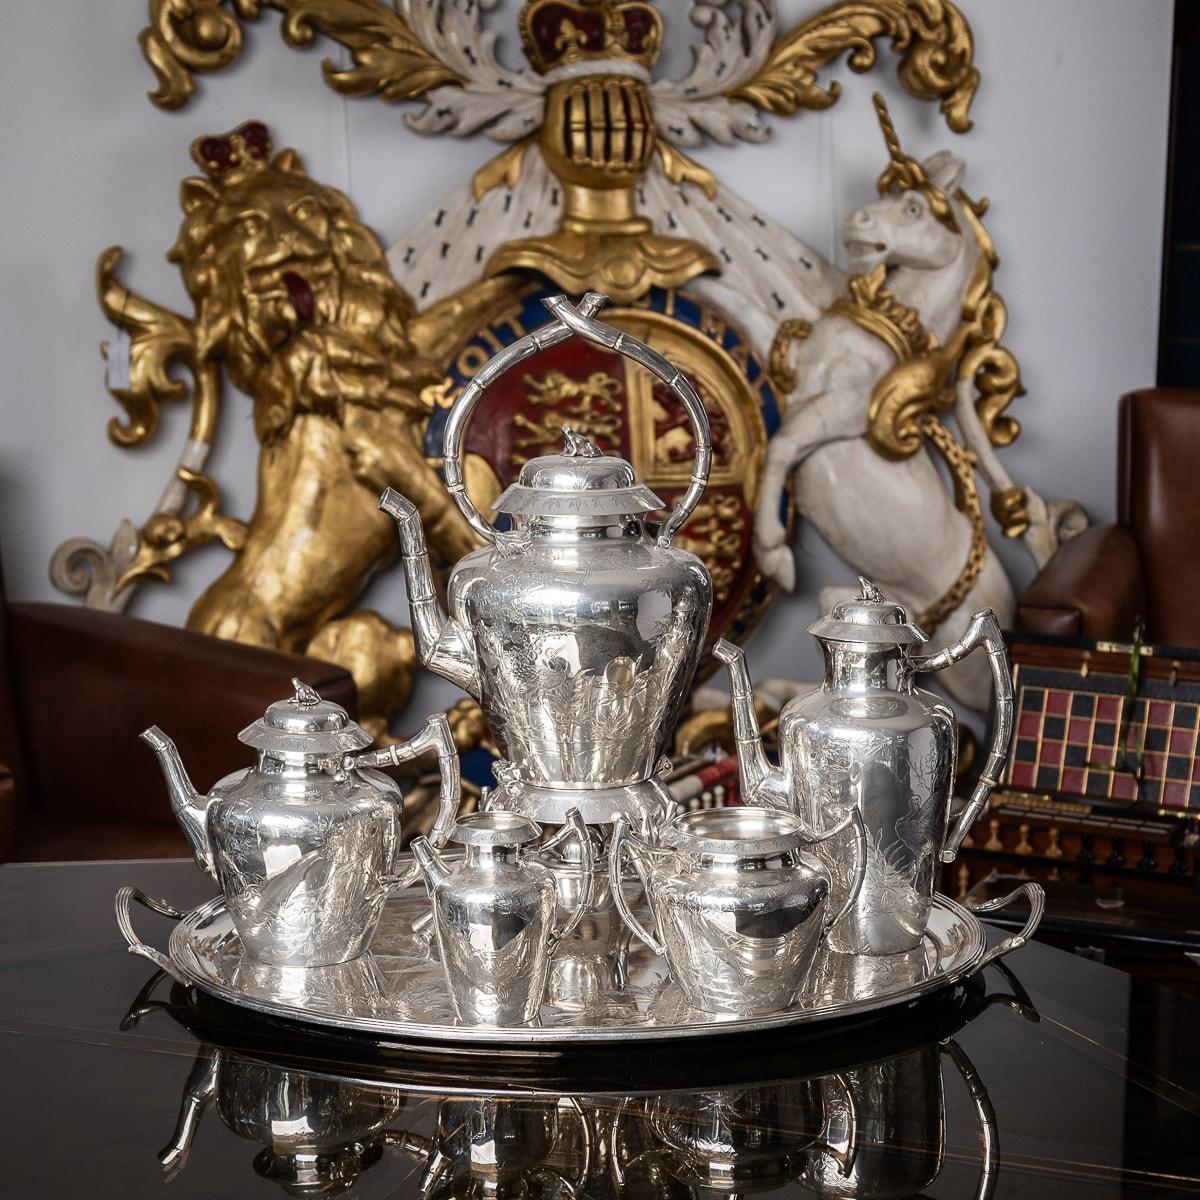 Antikes Tee- und Kaffeeservice aus massivem Silber der viktorianischen Ästhetik des 19. Jahrhunderts, bestehend aus einem Wasserkocher, einer Kaffeekanne, einer Teekanne, einer Zuckerdose, einem Sahnekännchen und einem Tablett. Das Set ist äußerst